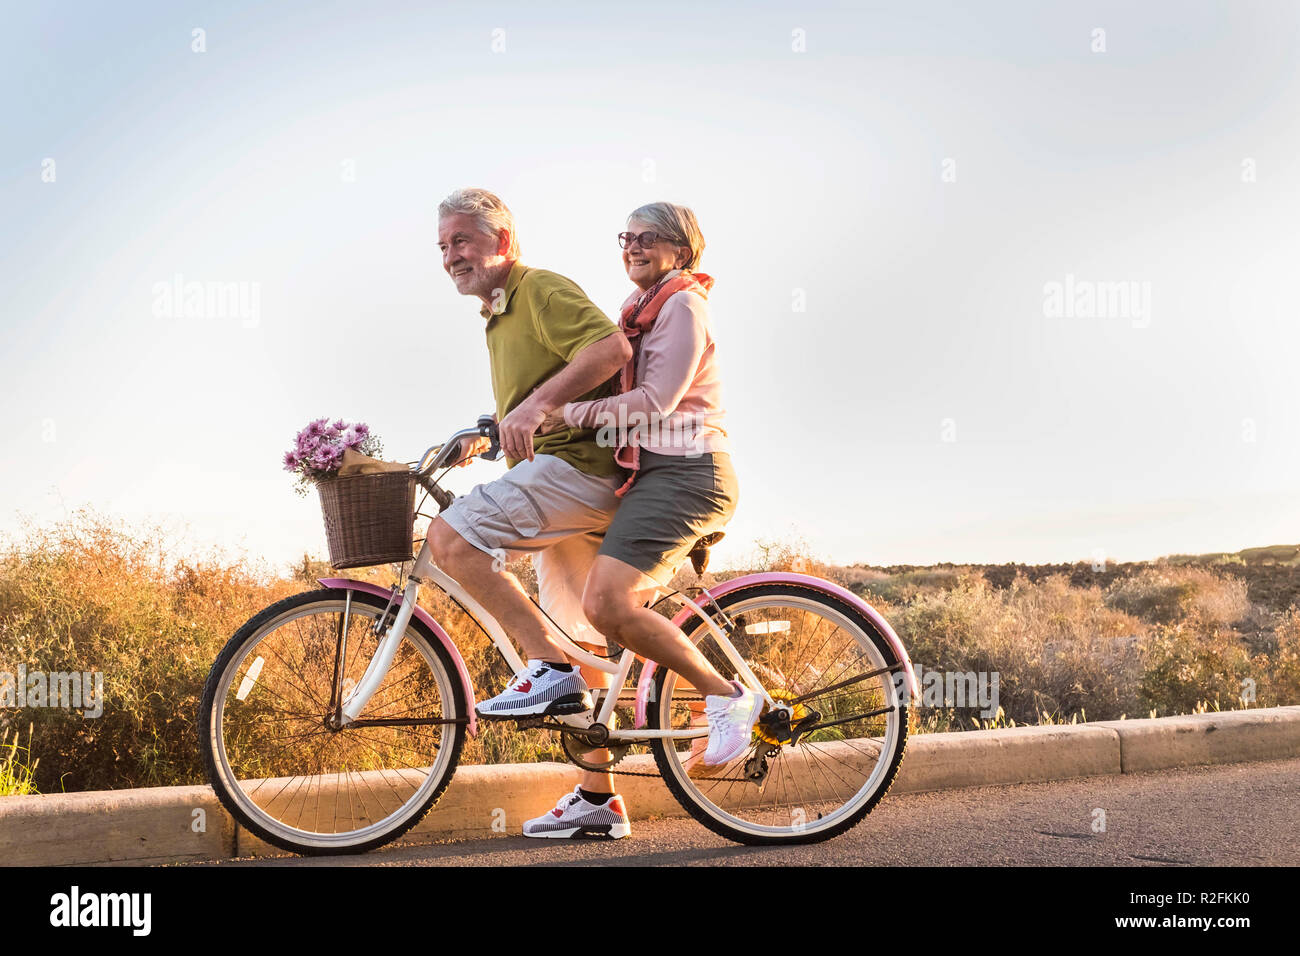 Dos altos hombre y mujer juntos en una vieja bicicleta la actividad al aire libre. La felicidad y la libertad del concepto de trabajo. Los rayos de sol y sonrisas. Foto de stock